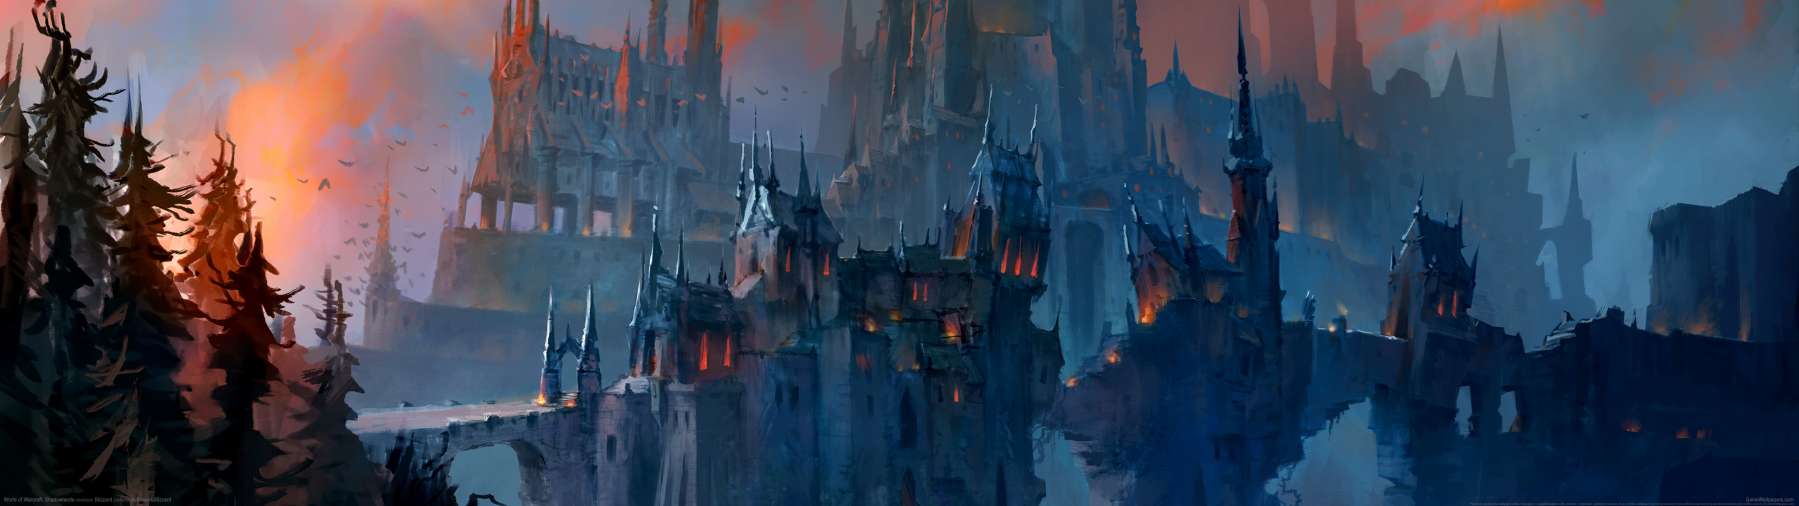 World of Warcraft: Shadowlands superwide Hintergrundbild 04